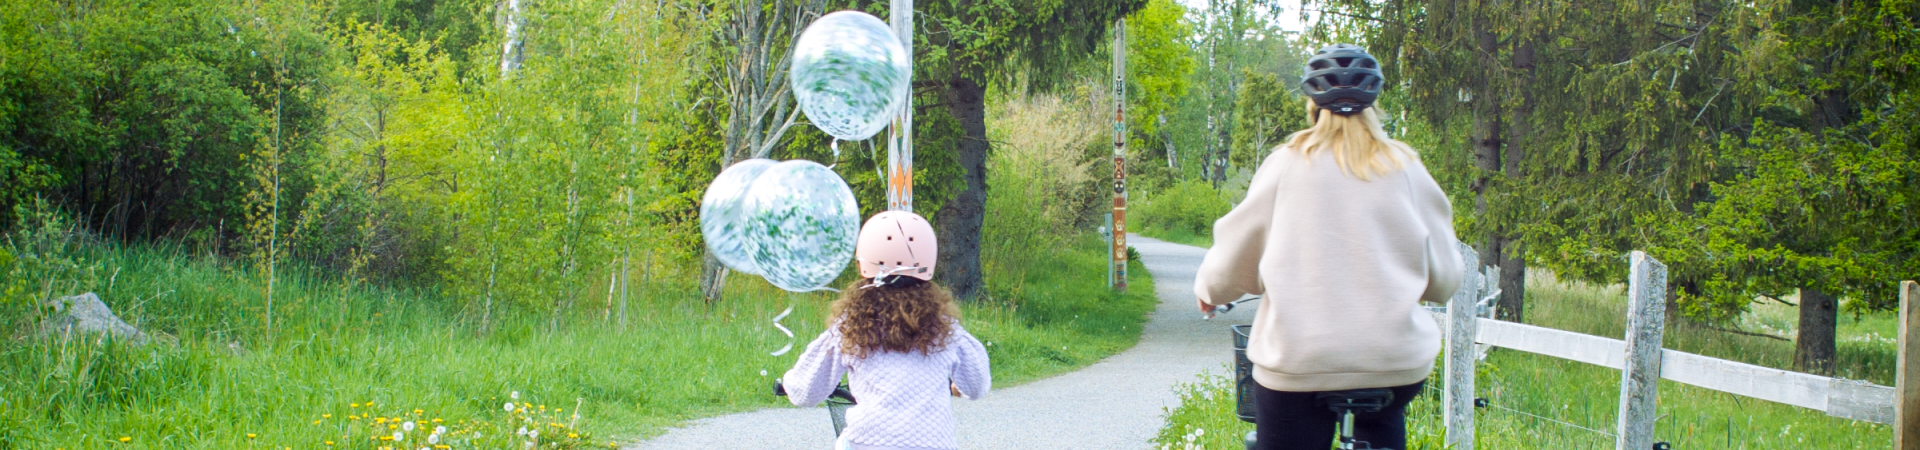 Cyklande mamma och dotter bakifrån på grusväg med grönska runtomkring och ballonger fladdrande från flickans cykel.